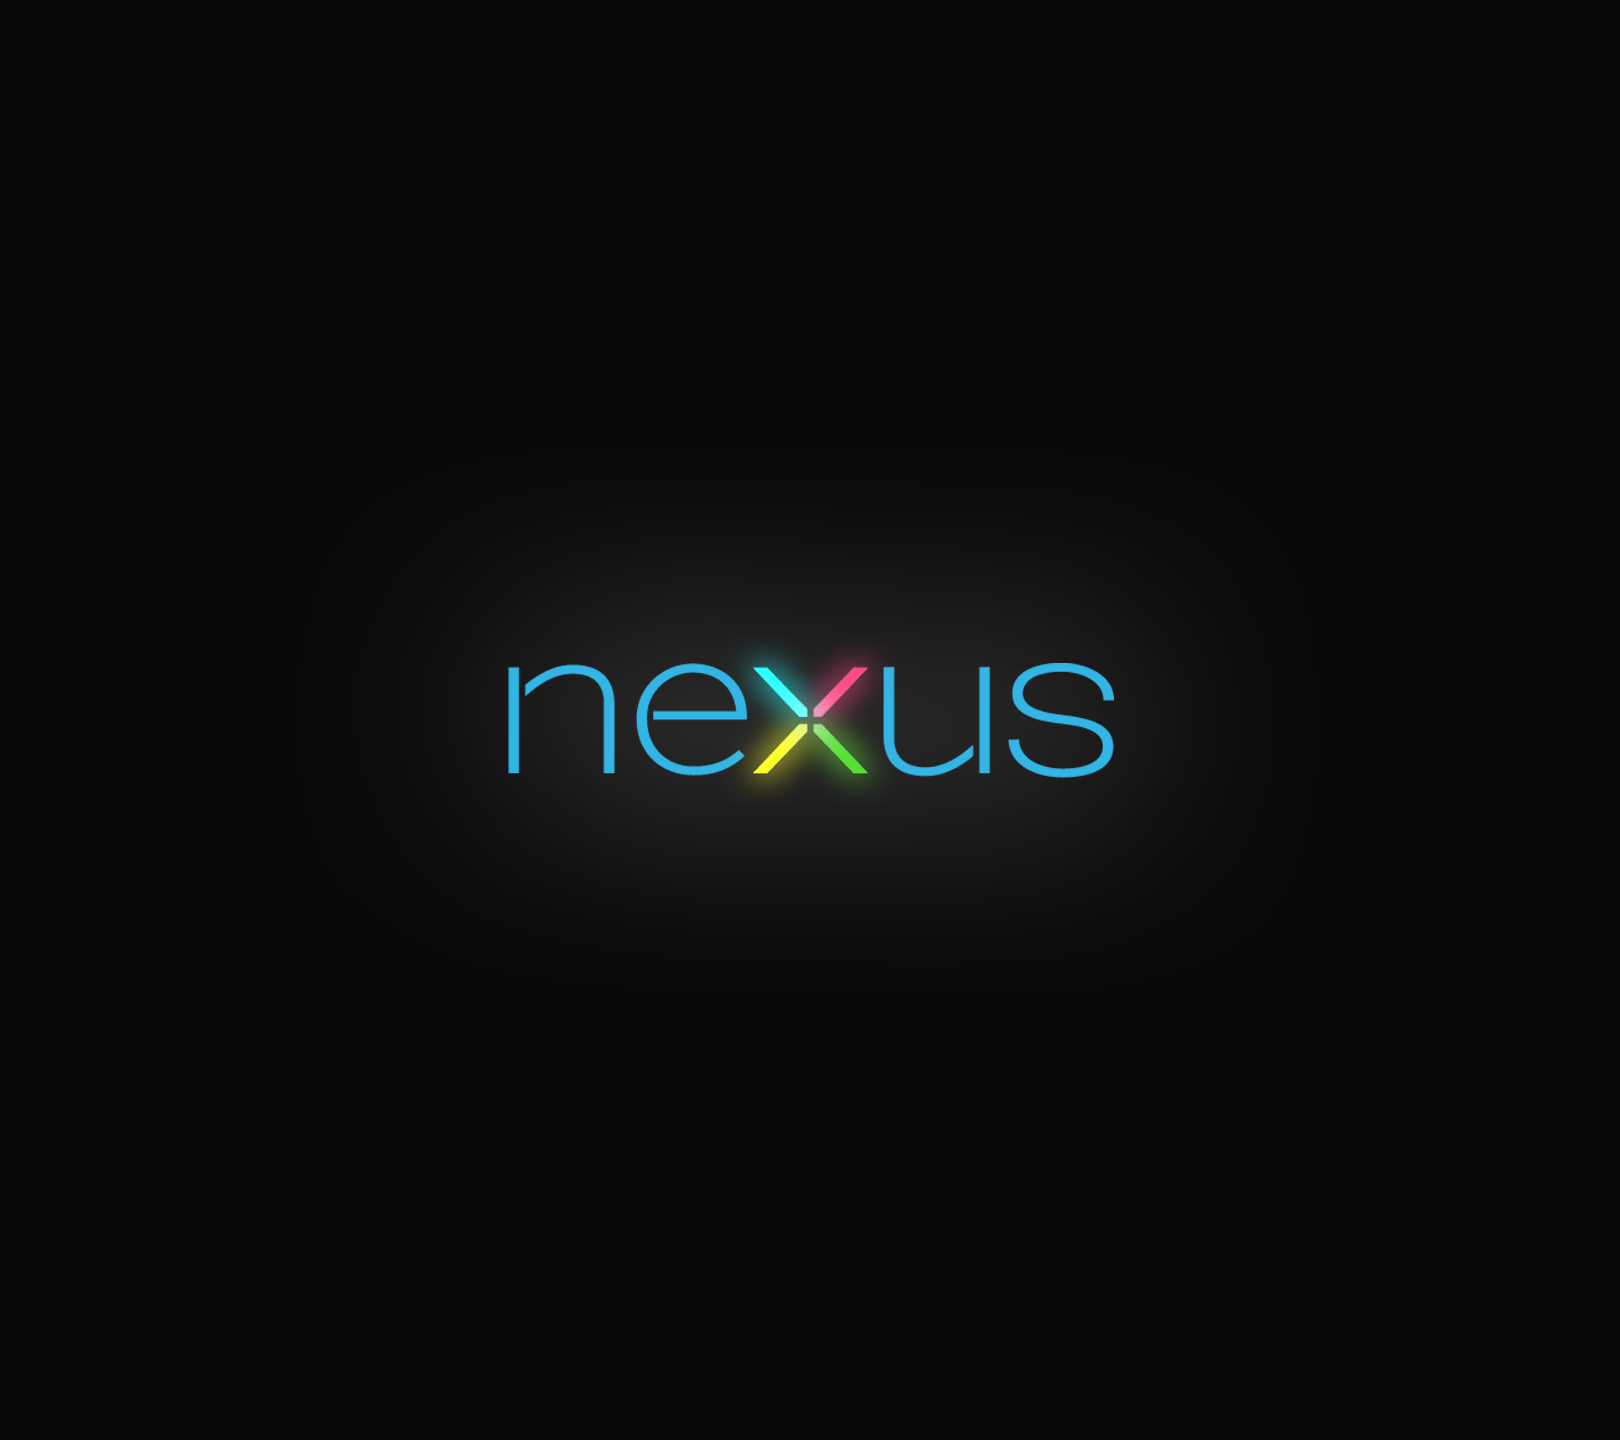 Nexus Android HD Wallpaper Desktop